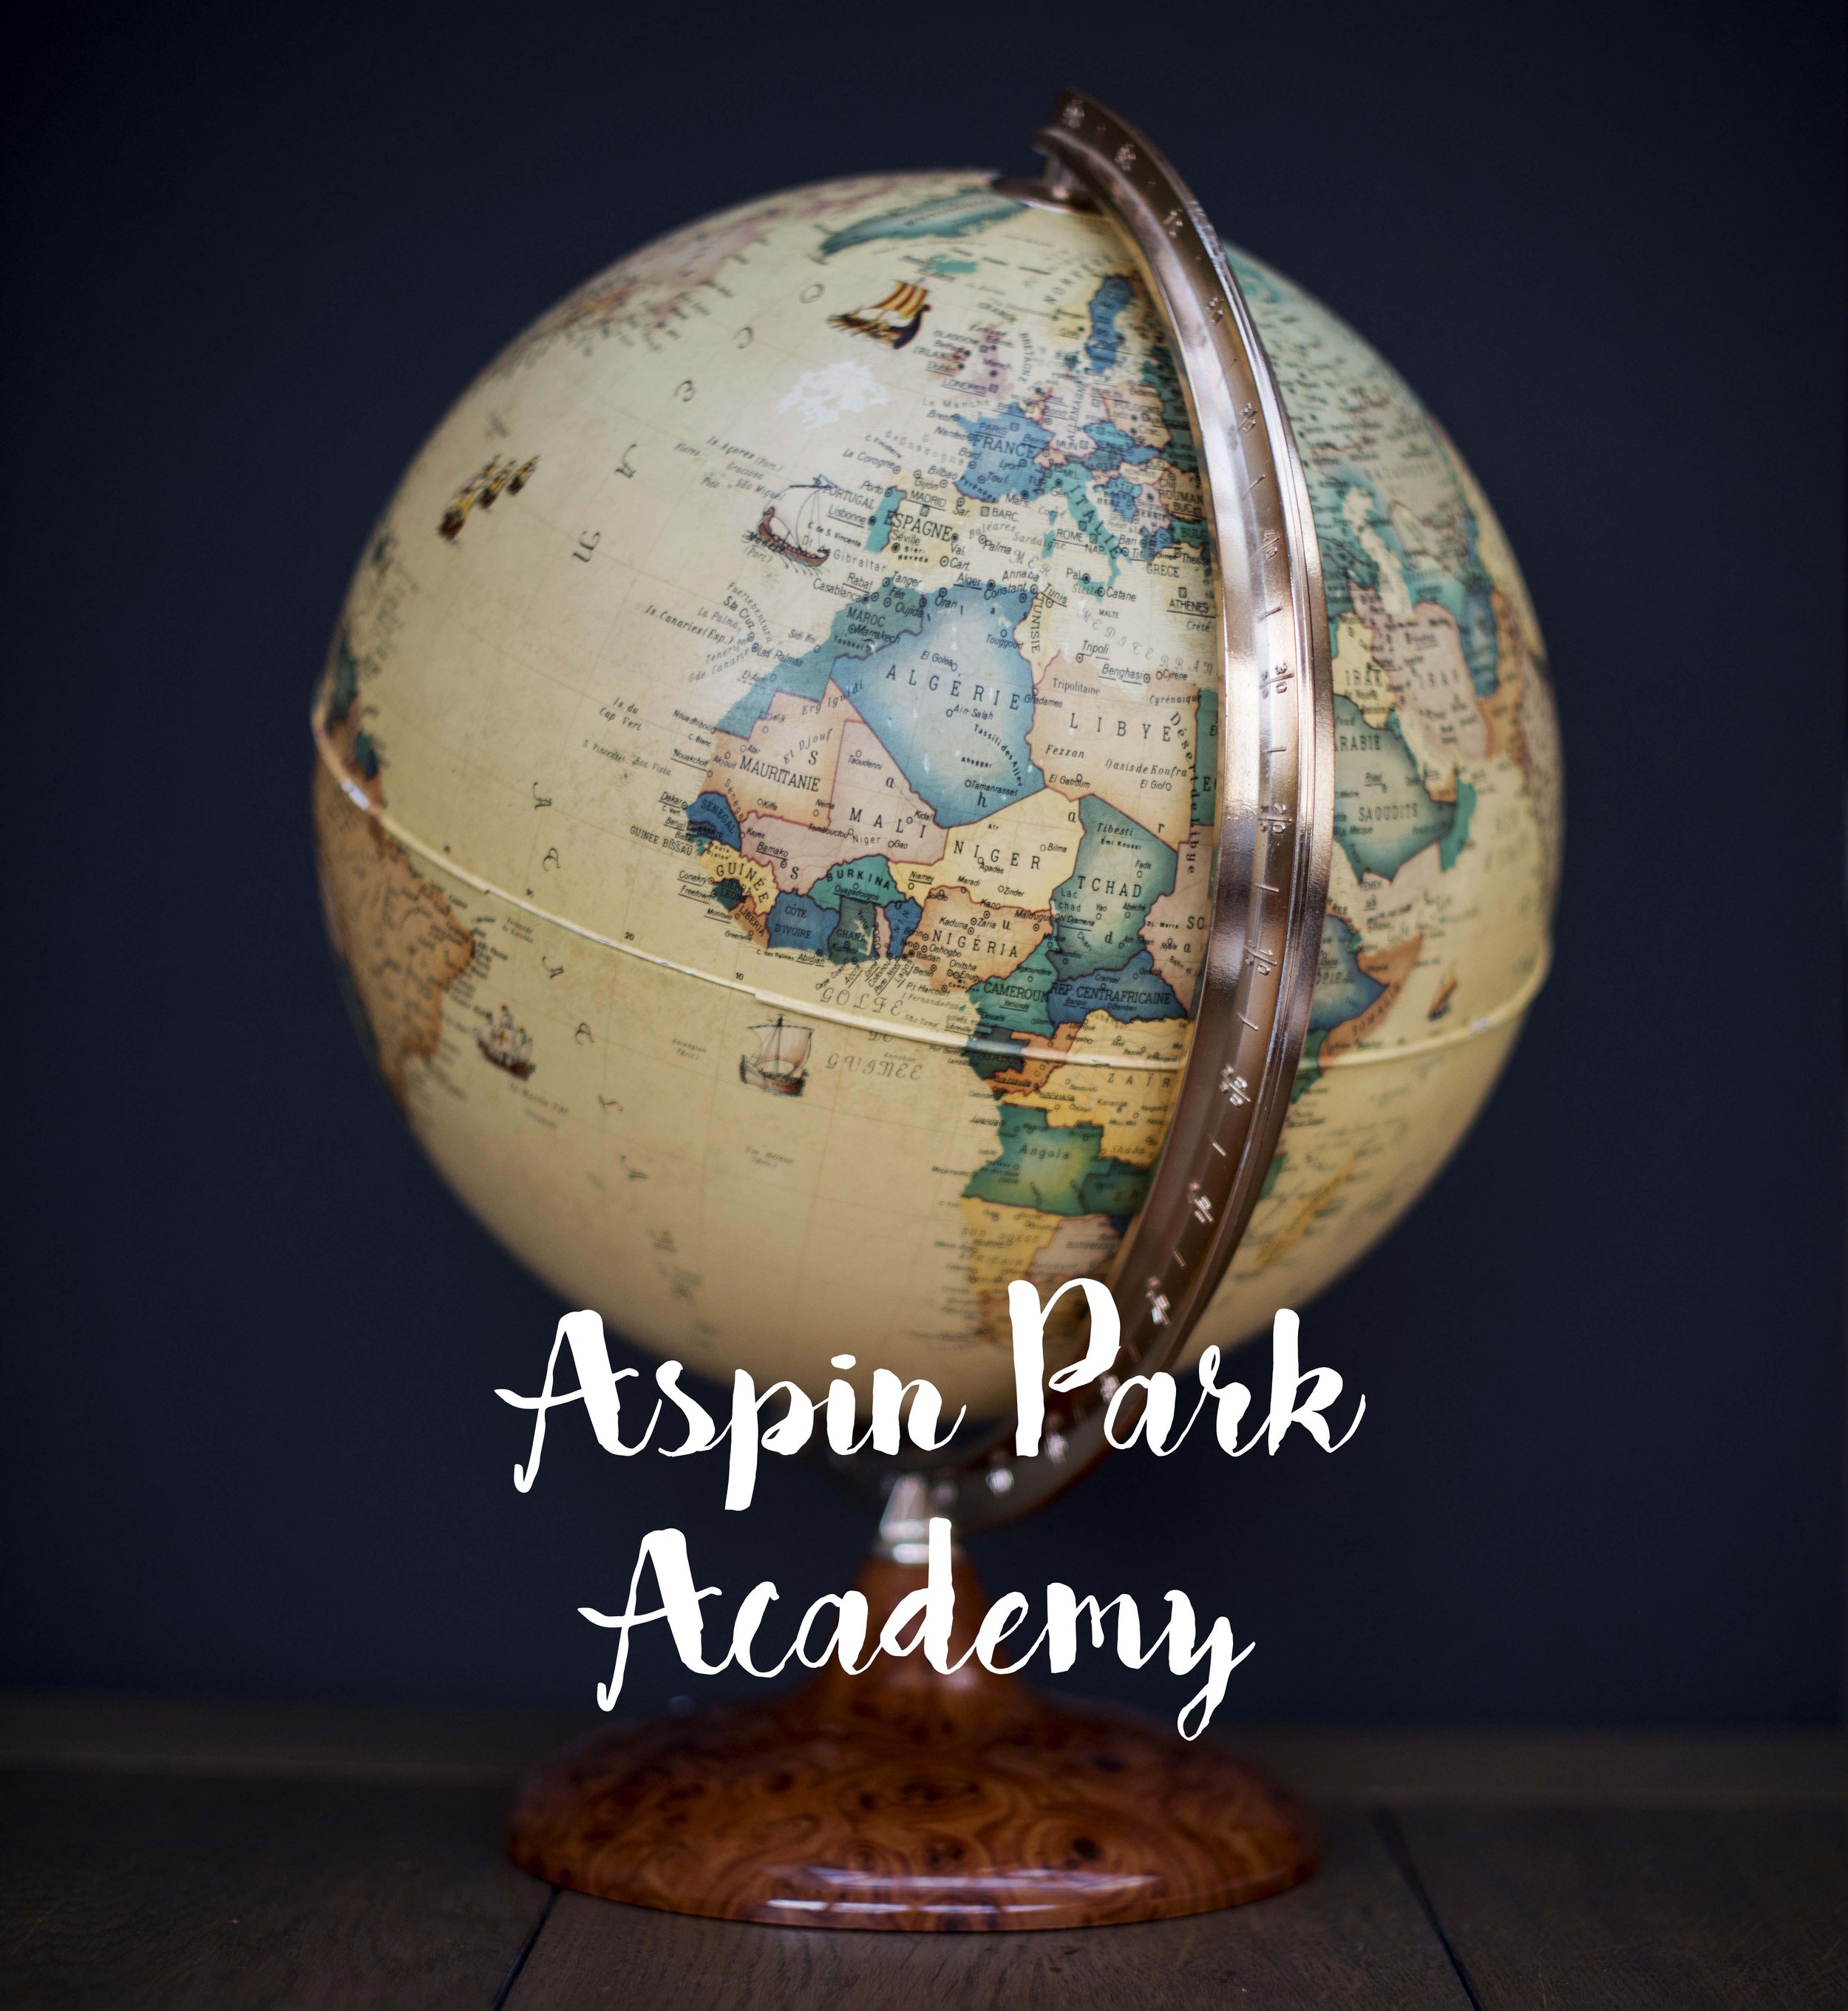 aspin park academy globe.jpg